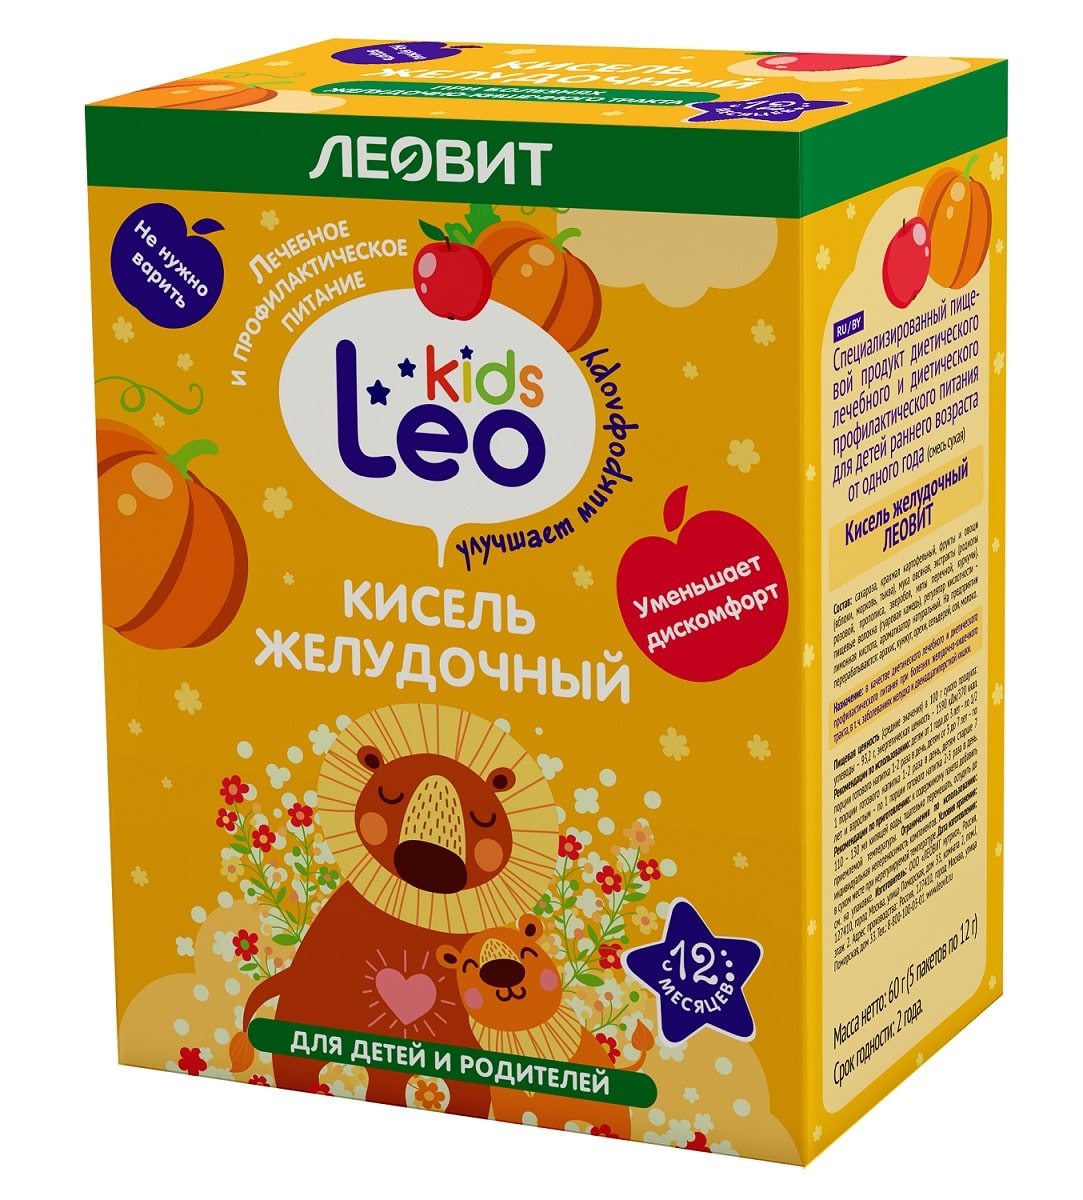 Купить Леовит Кисель желудочный для детей, 5 пакетов х 12 г (Леовит, Leo Kids), Россия